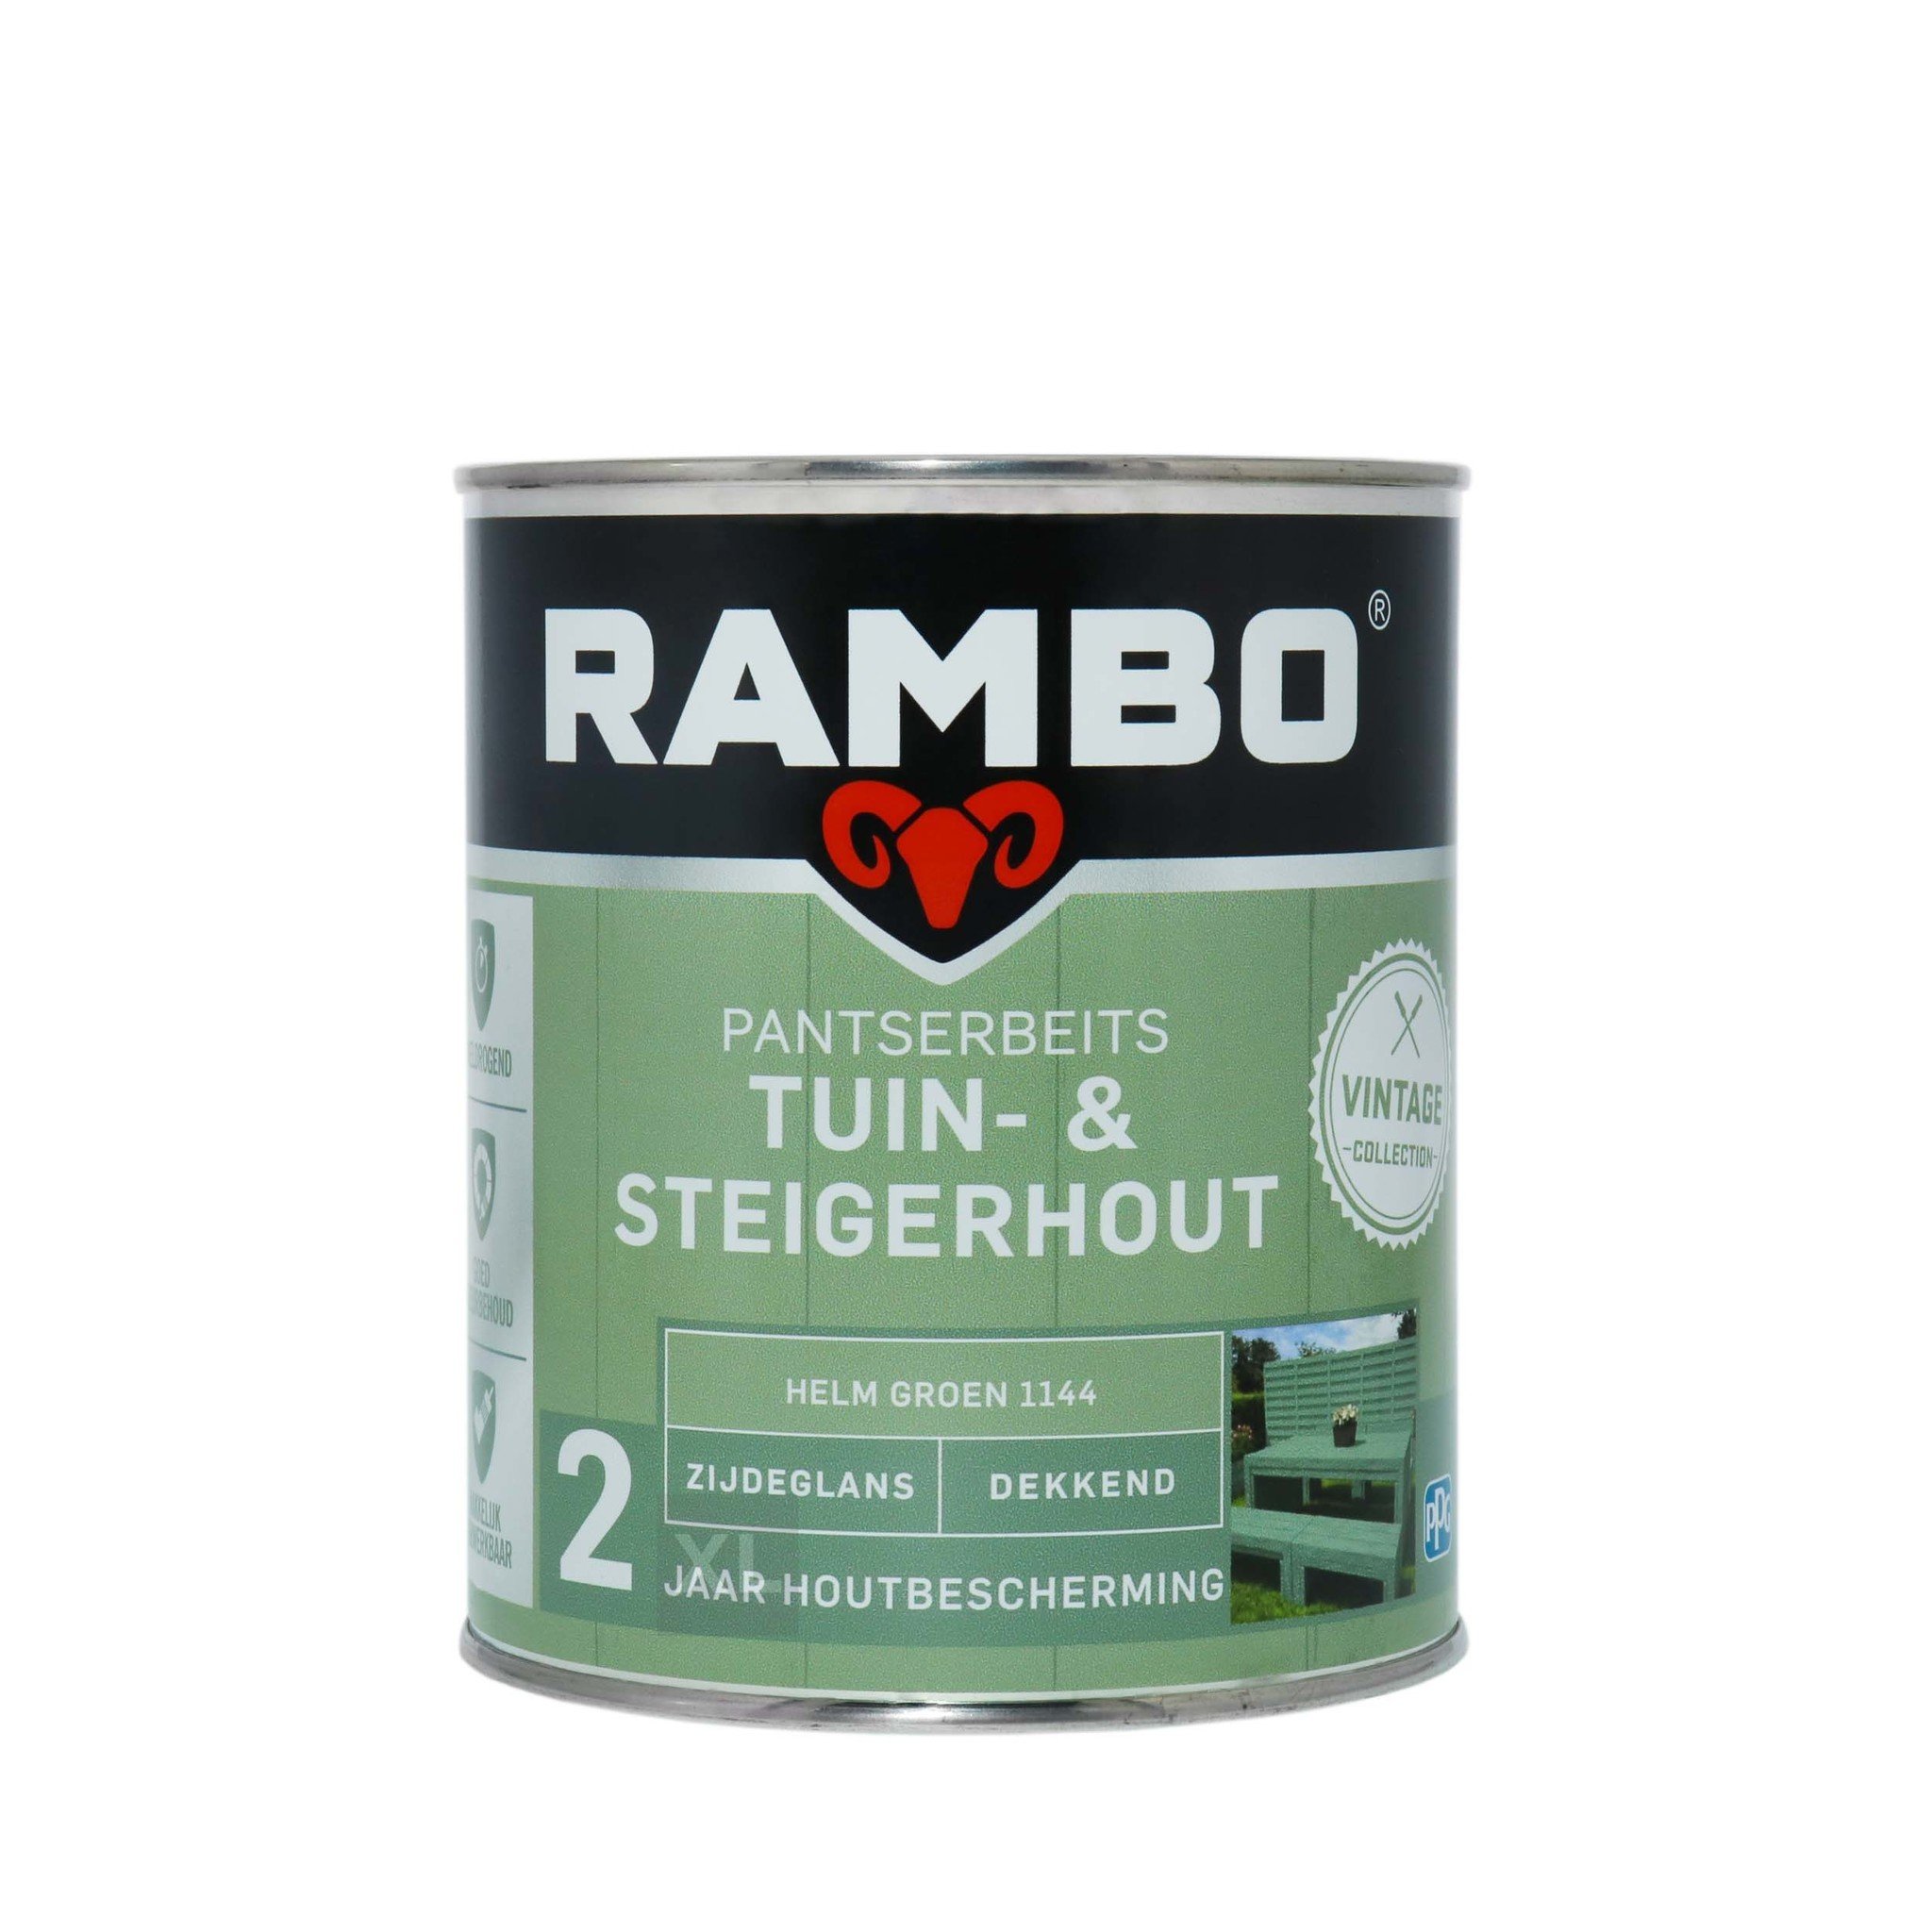 zelfstandig naamwoord Snelkoppelingen Anoniem Rambo Pantserbeits Tuin- & Steigerhout 1144 Helm groen kopen? - VerfonlineXL